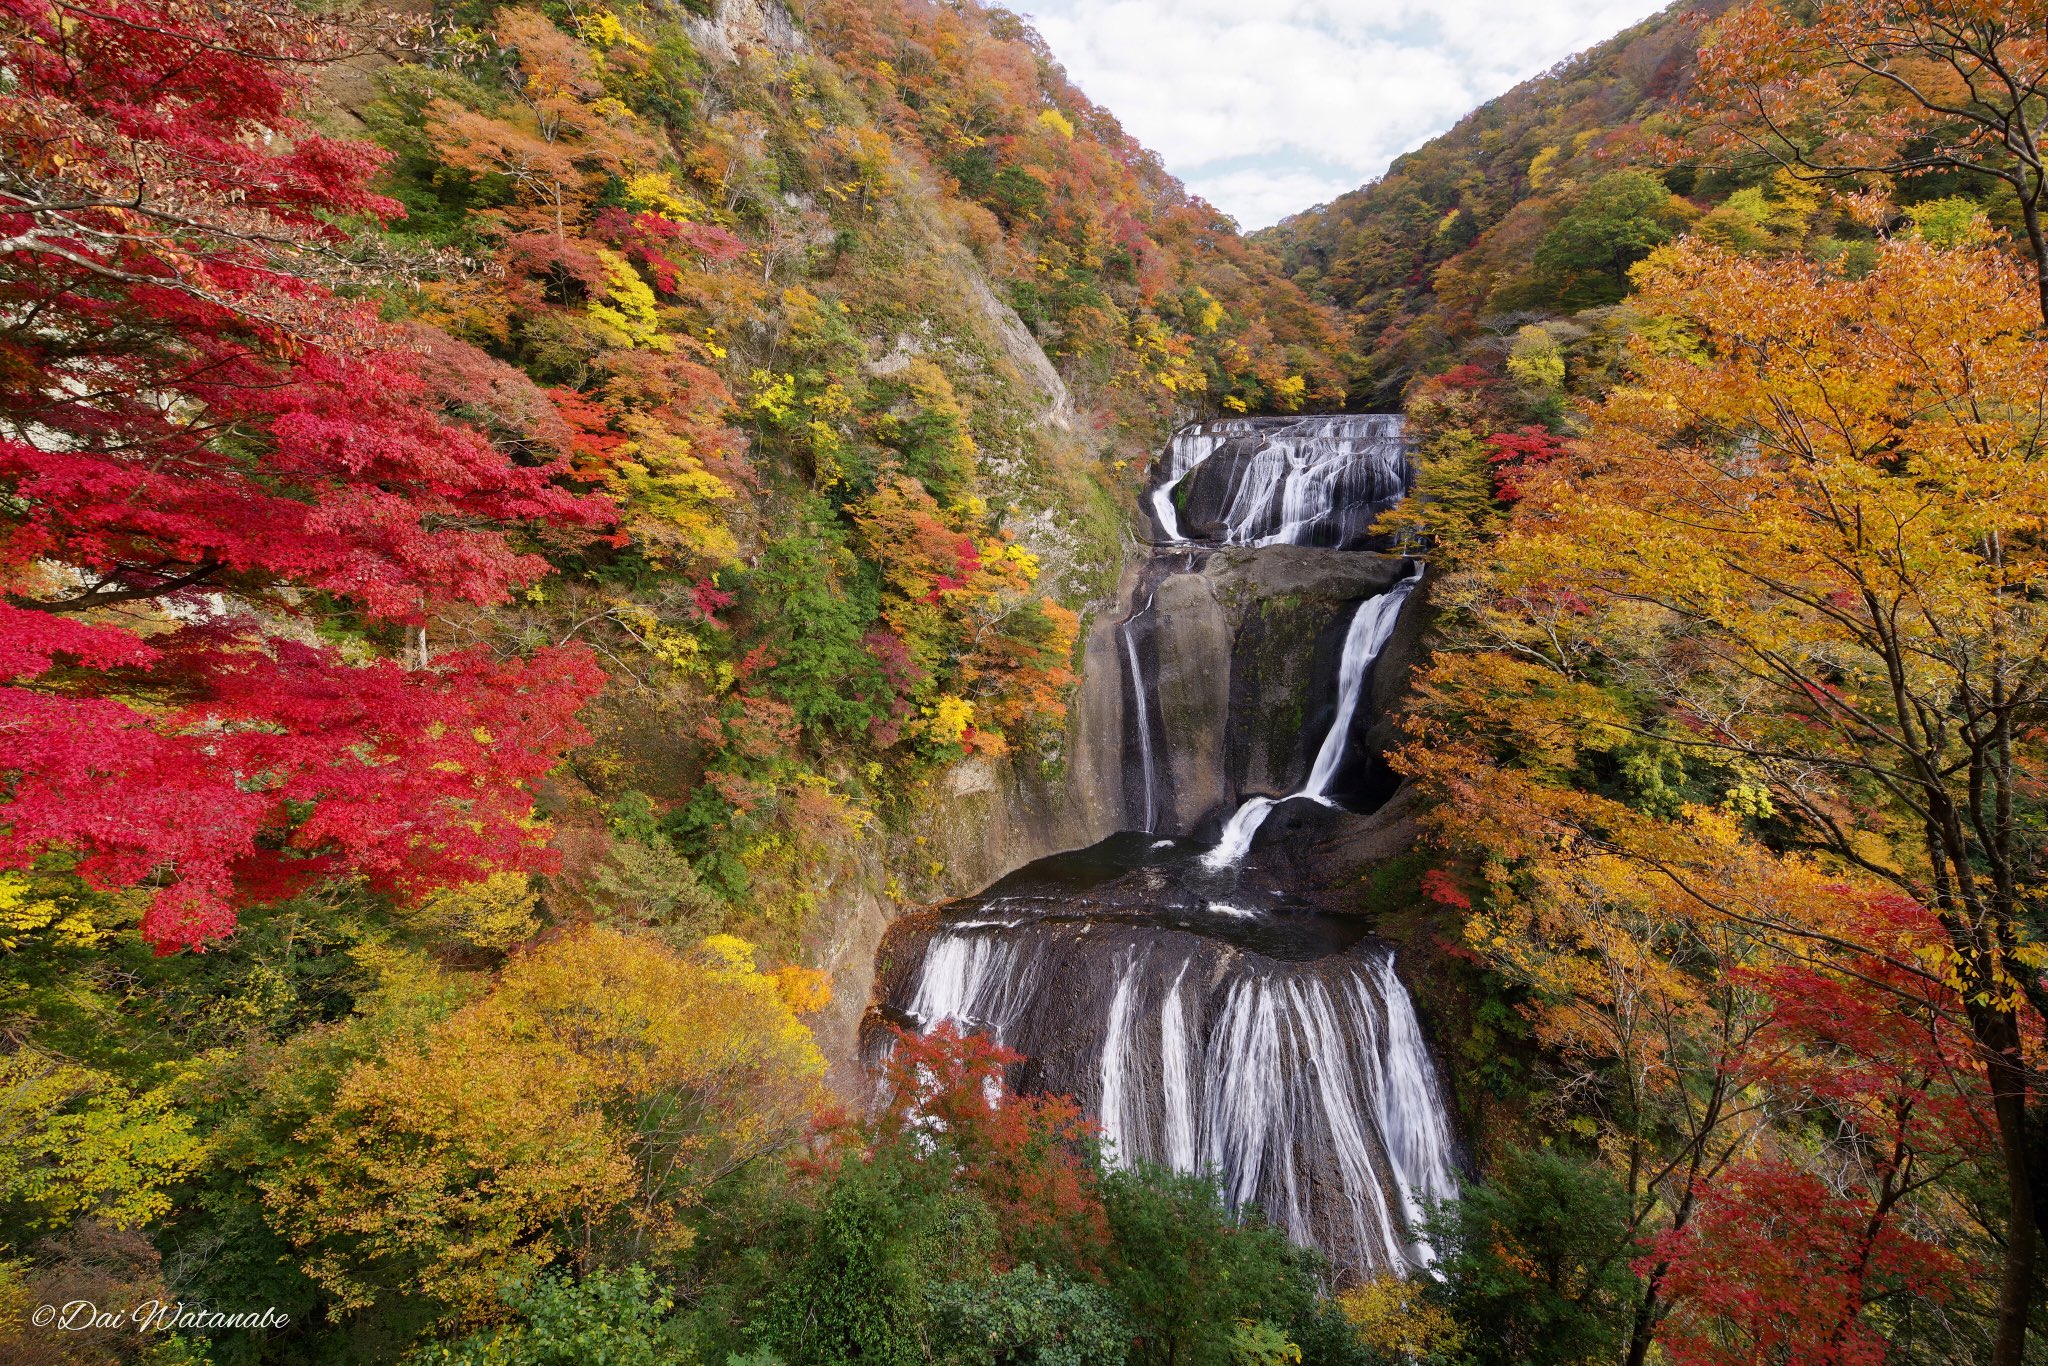 Dai Watanabe 写真 秋の袋田の滝 素晴らしい紅葉と滝のコラボでした 18年11月7日 袋田の滝 大子町 茨城県 紅葉 T Co O6ltfopvgq Twitter